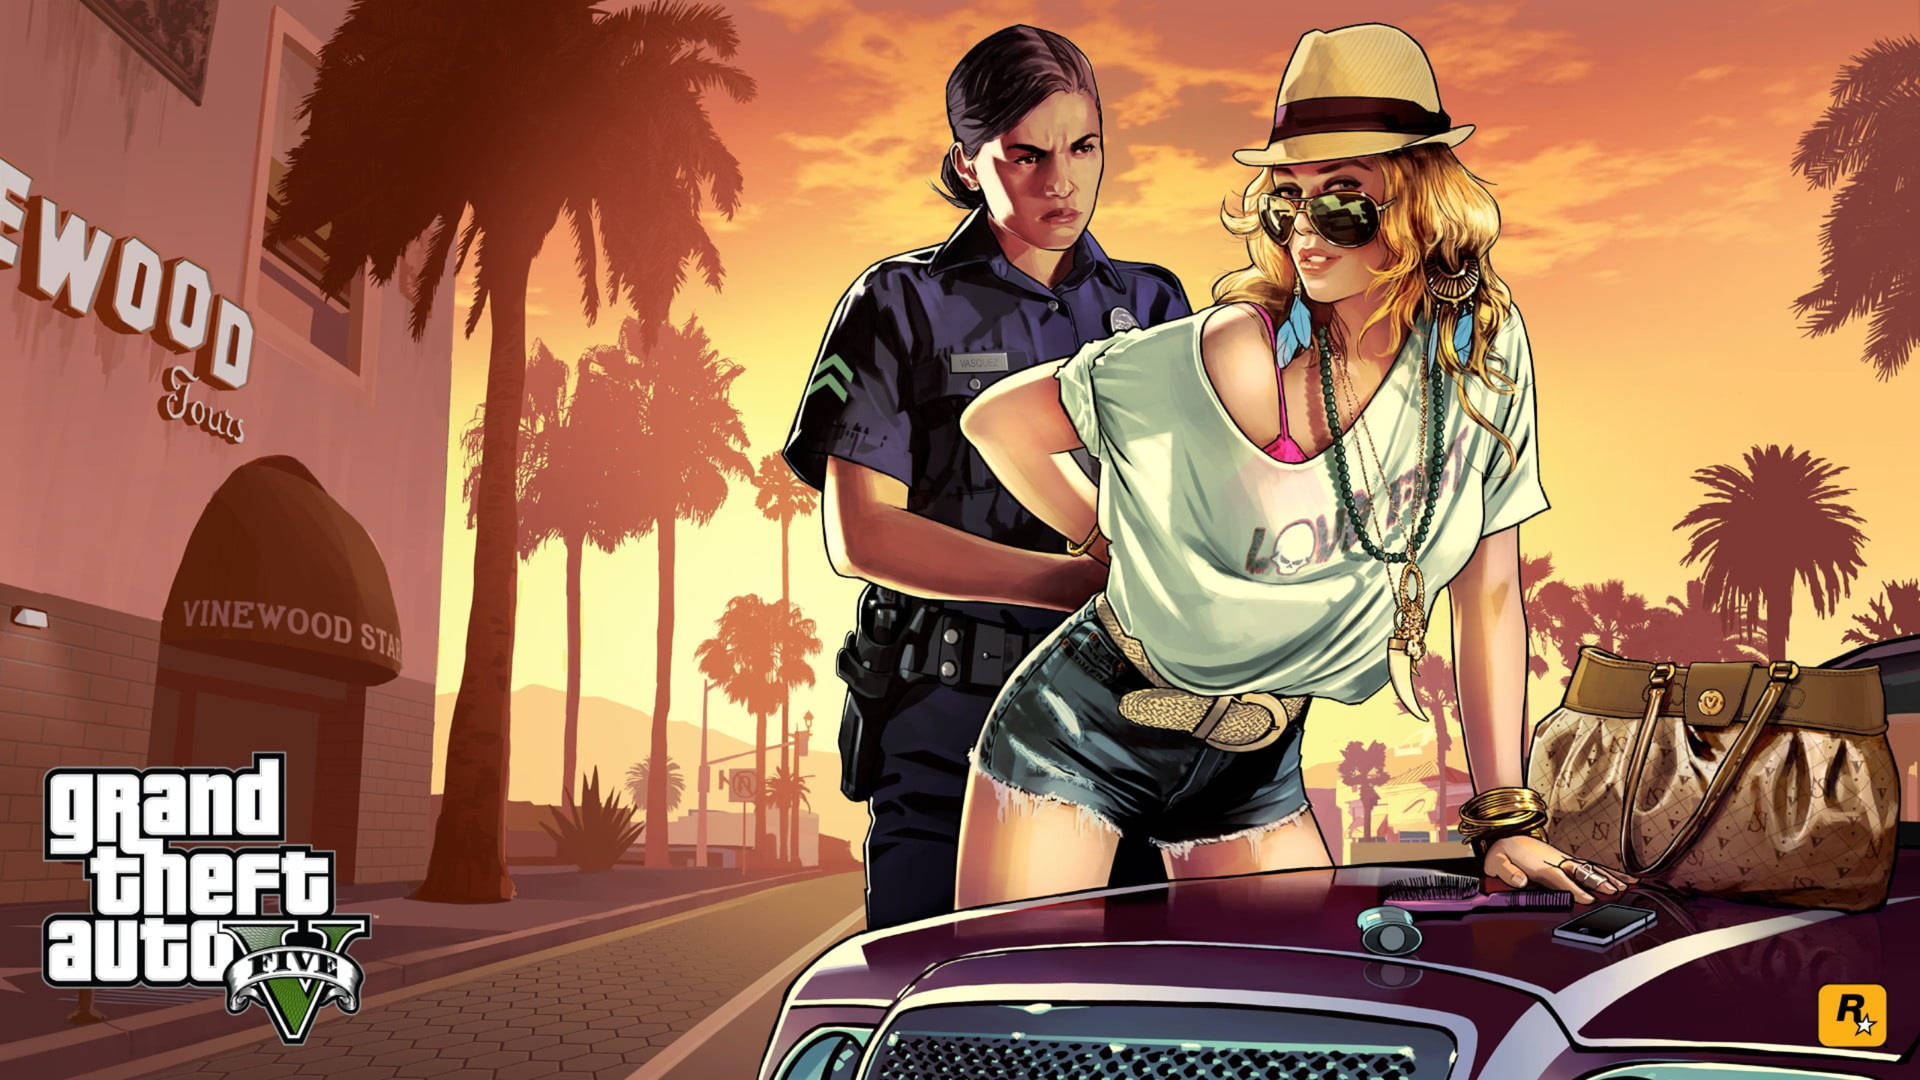 Billede af en kvinde, der anholdes for Grand Theft Auto Wallpaper